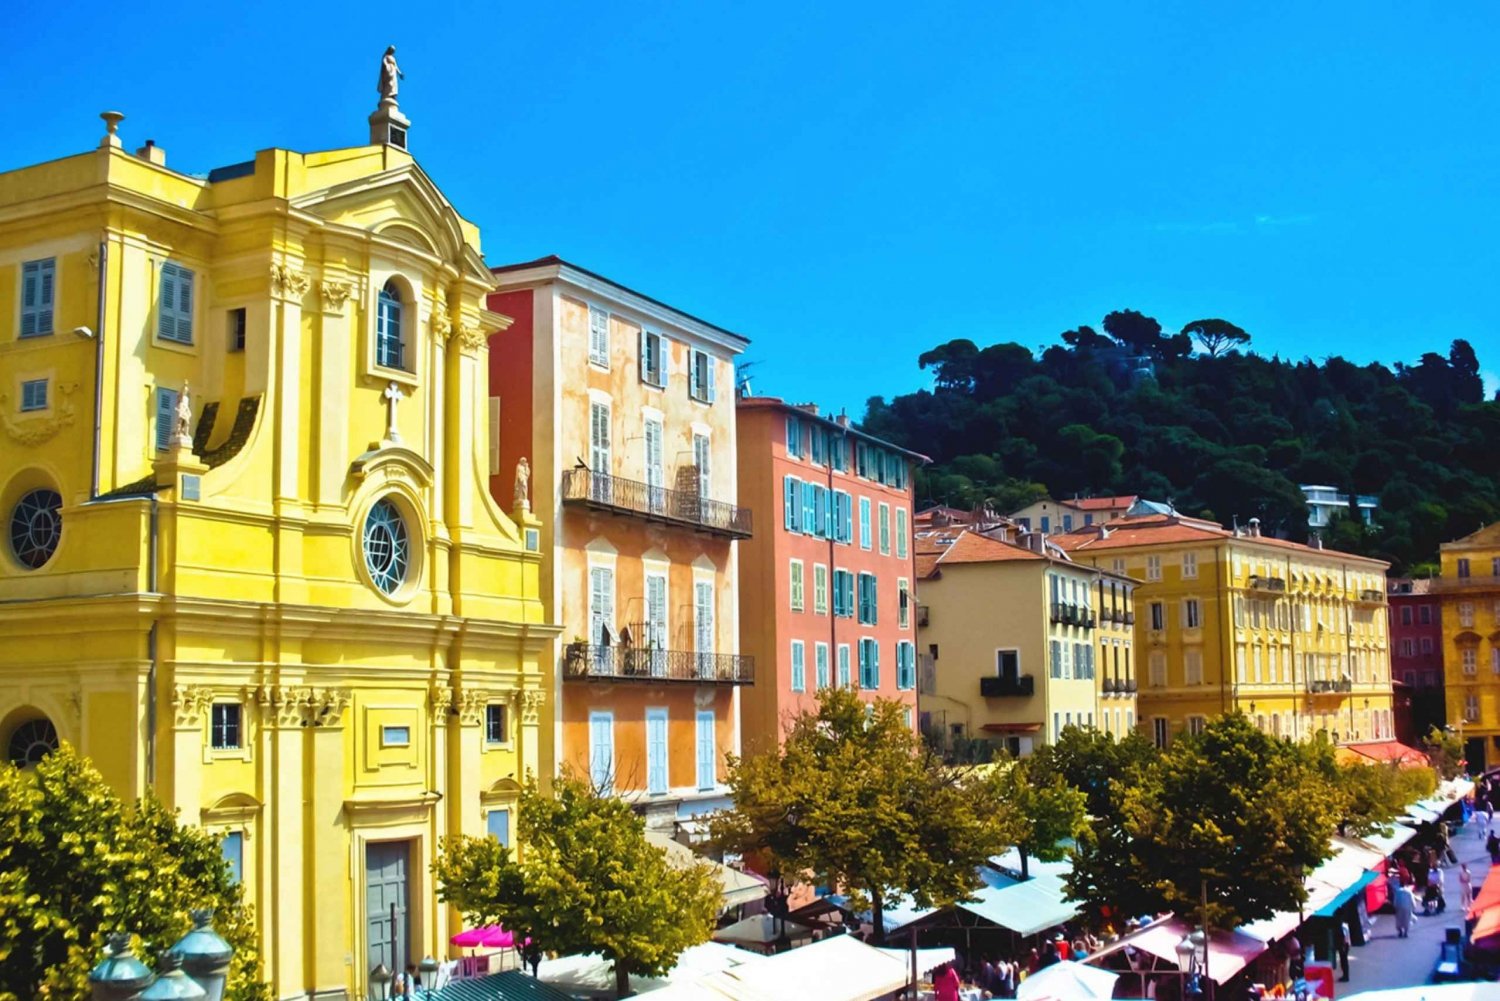 Vieux Nice : Den digitale audioguide